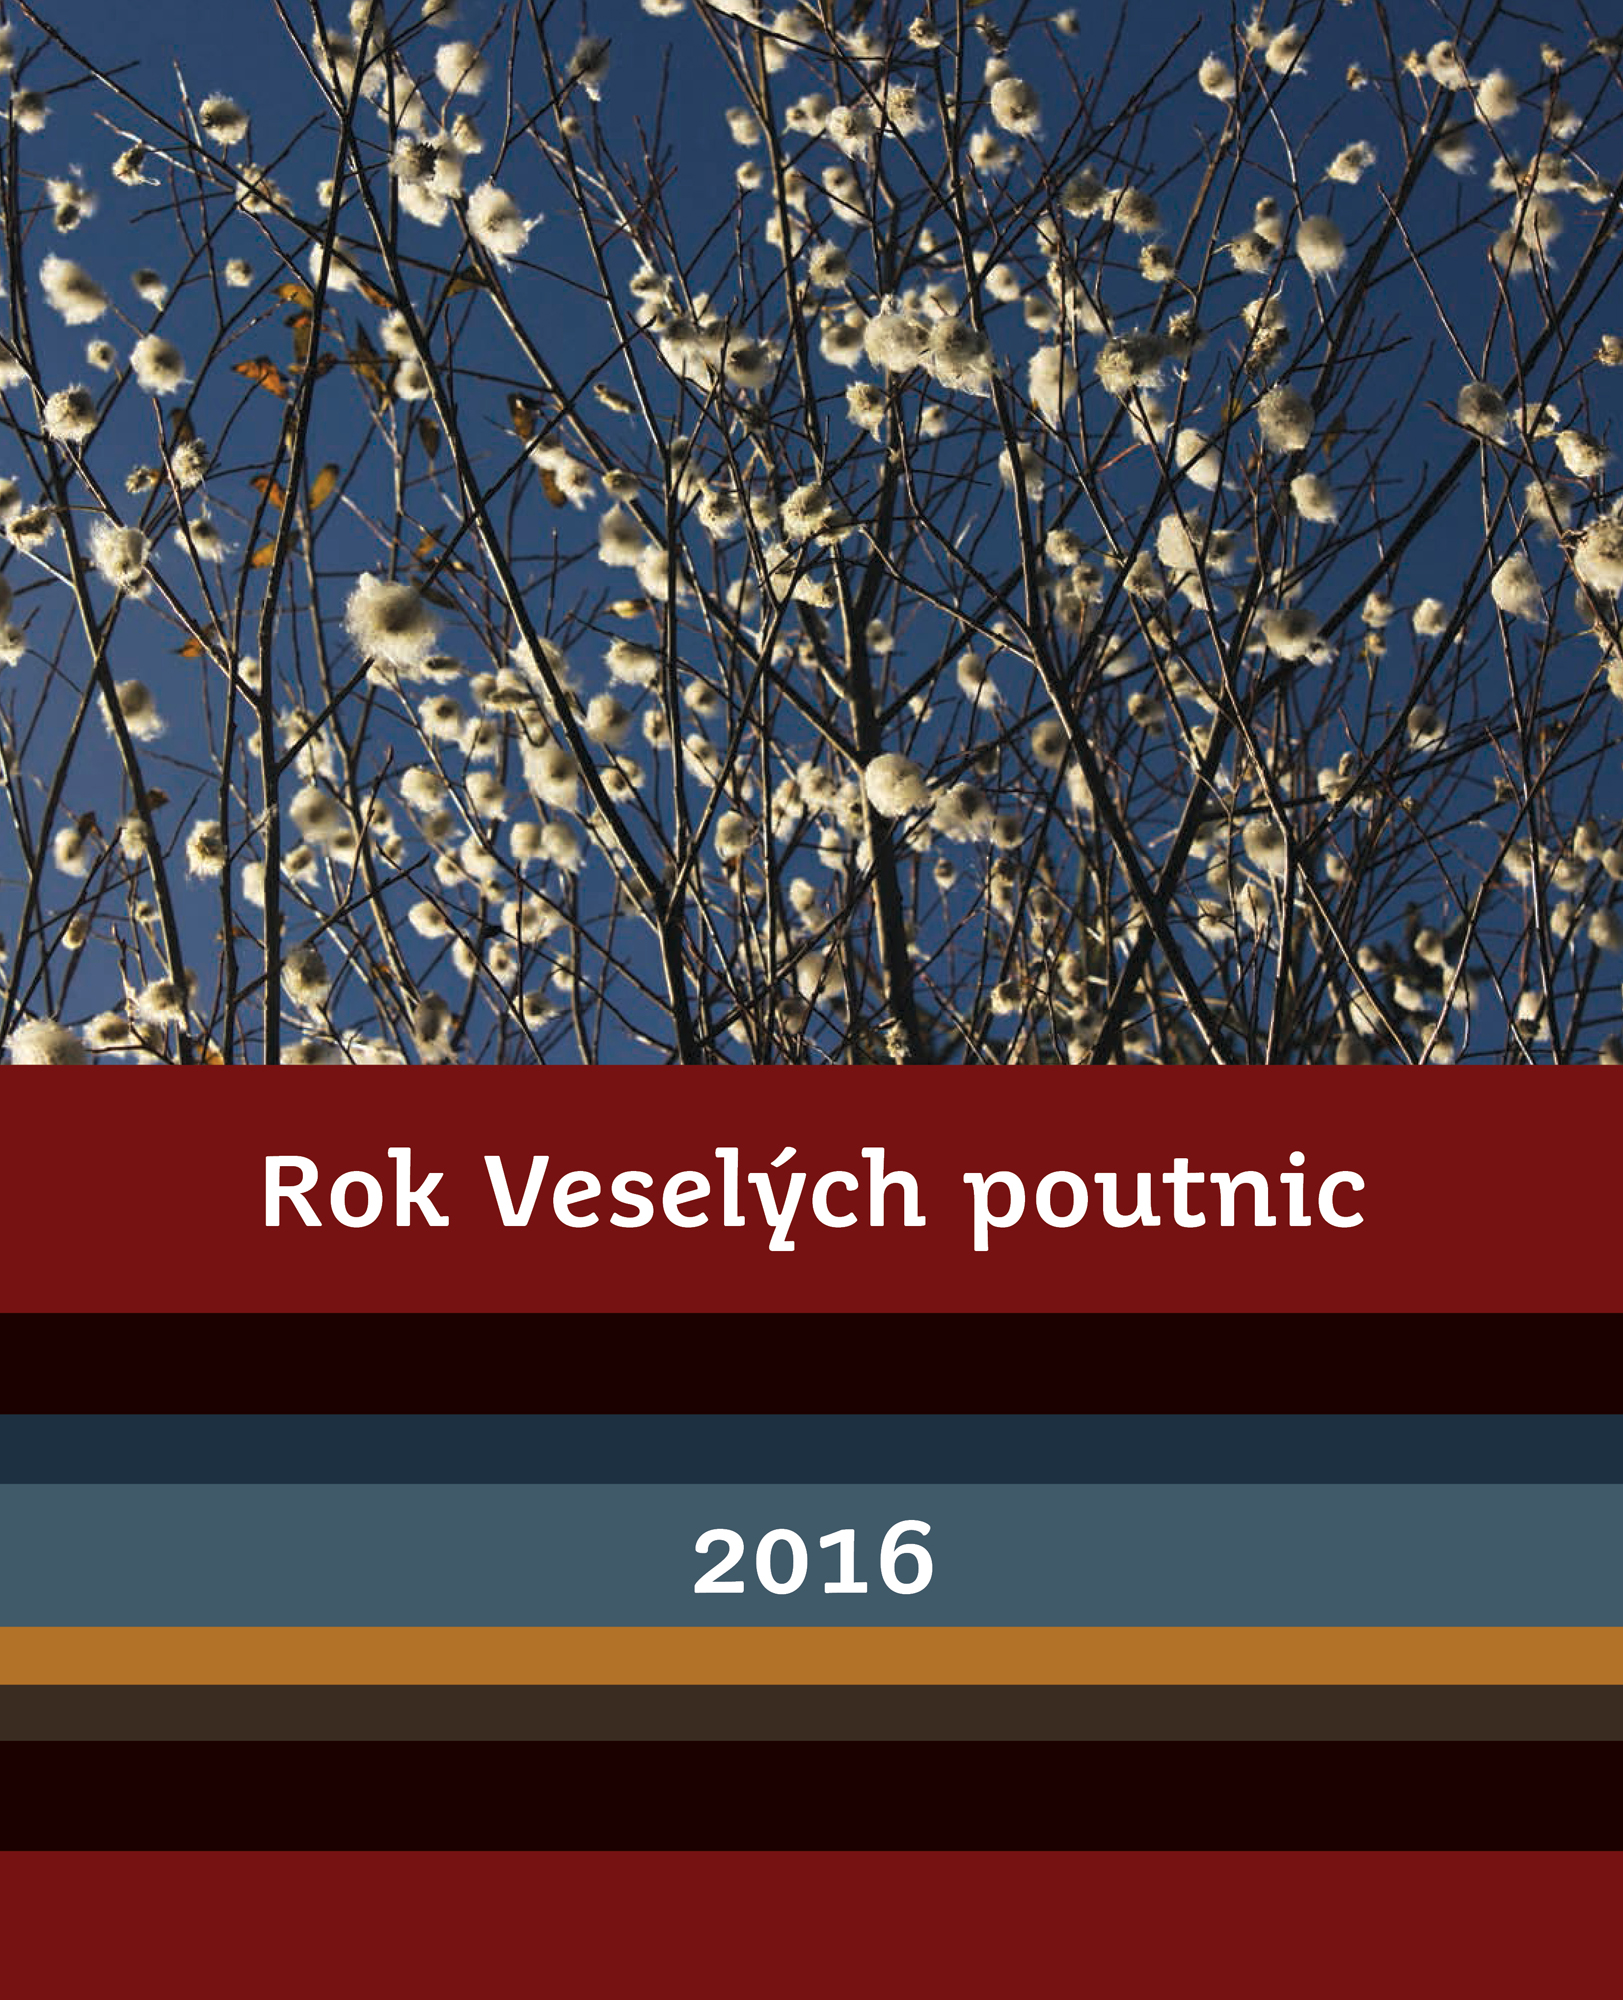 Kalendář Veselých poutnic 2016